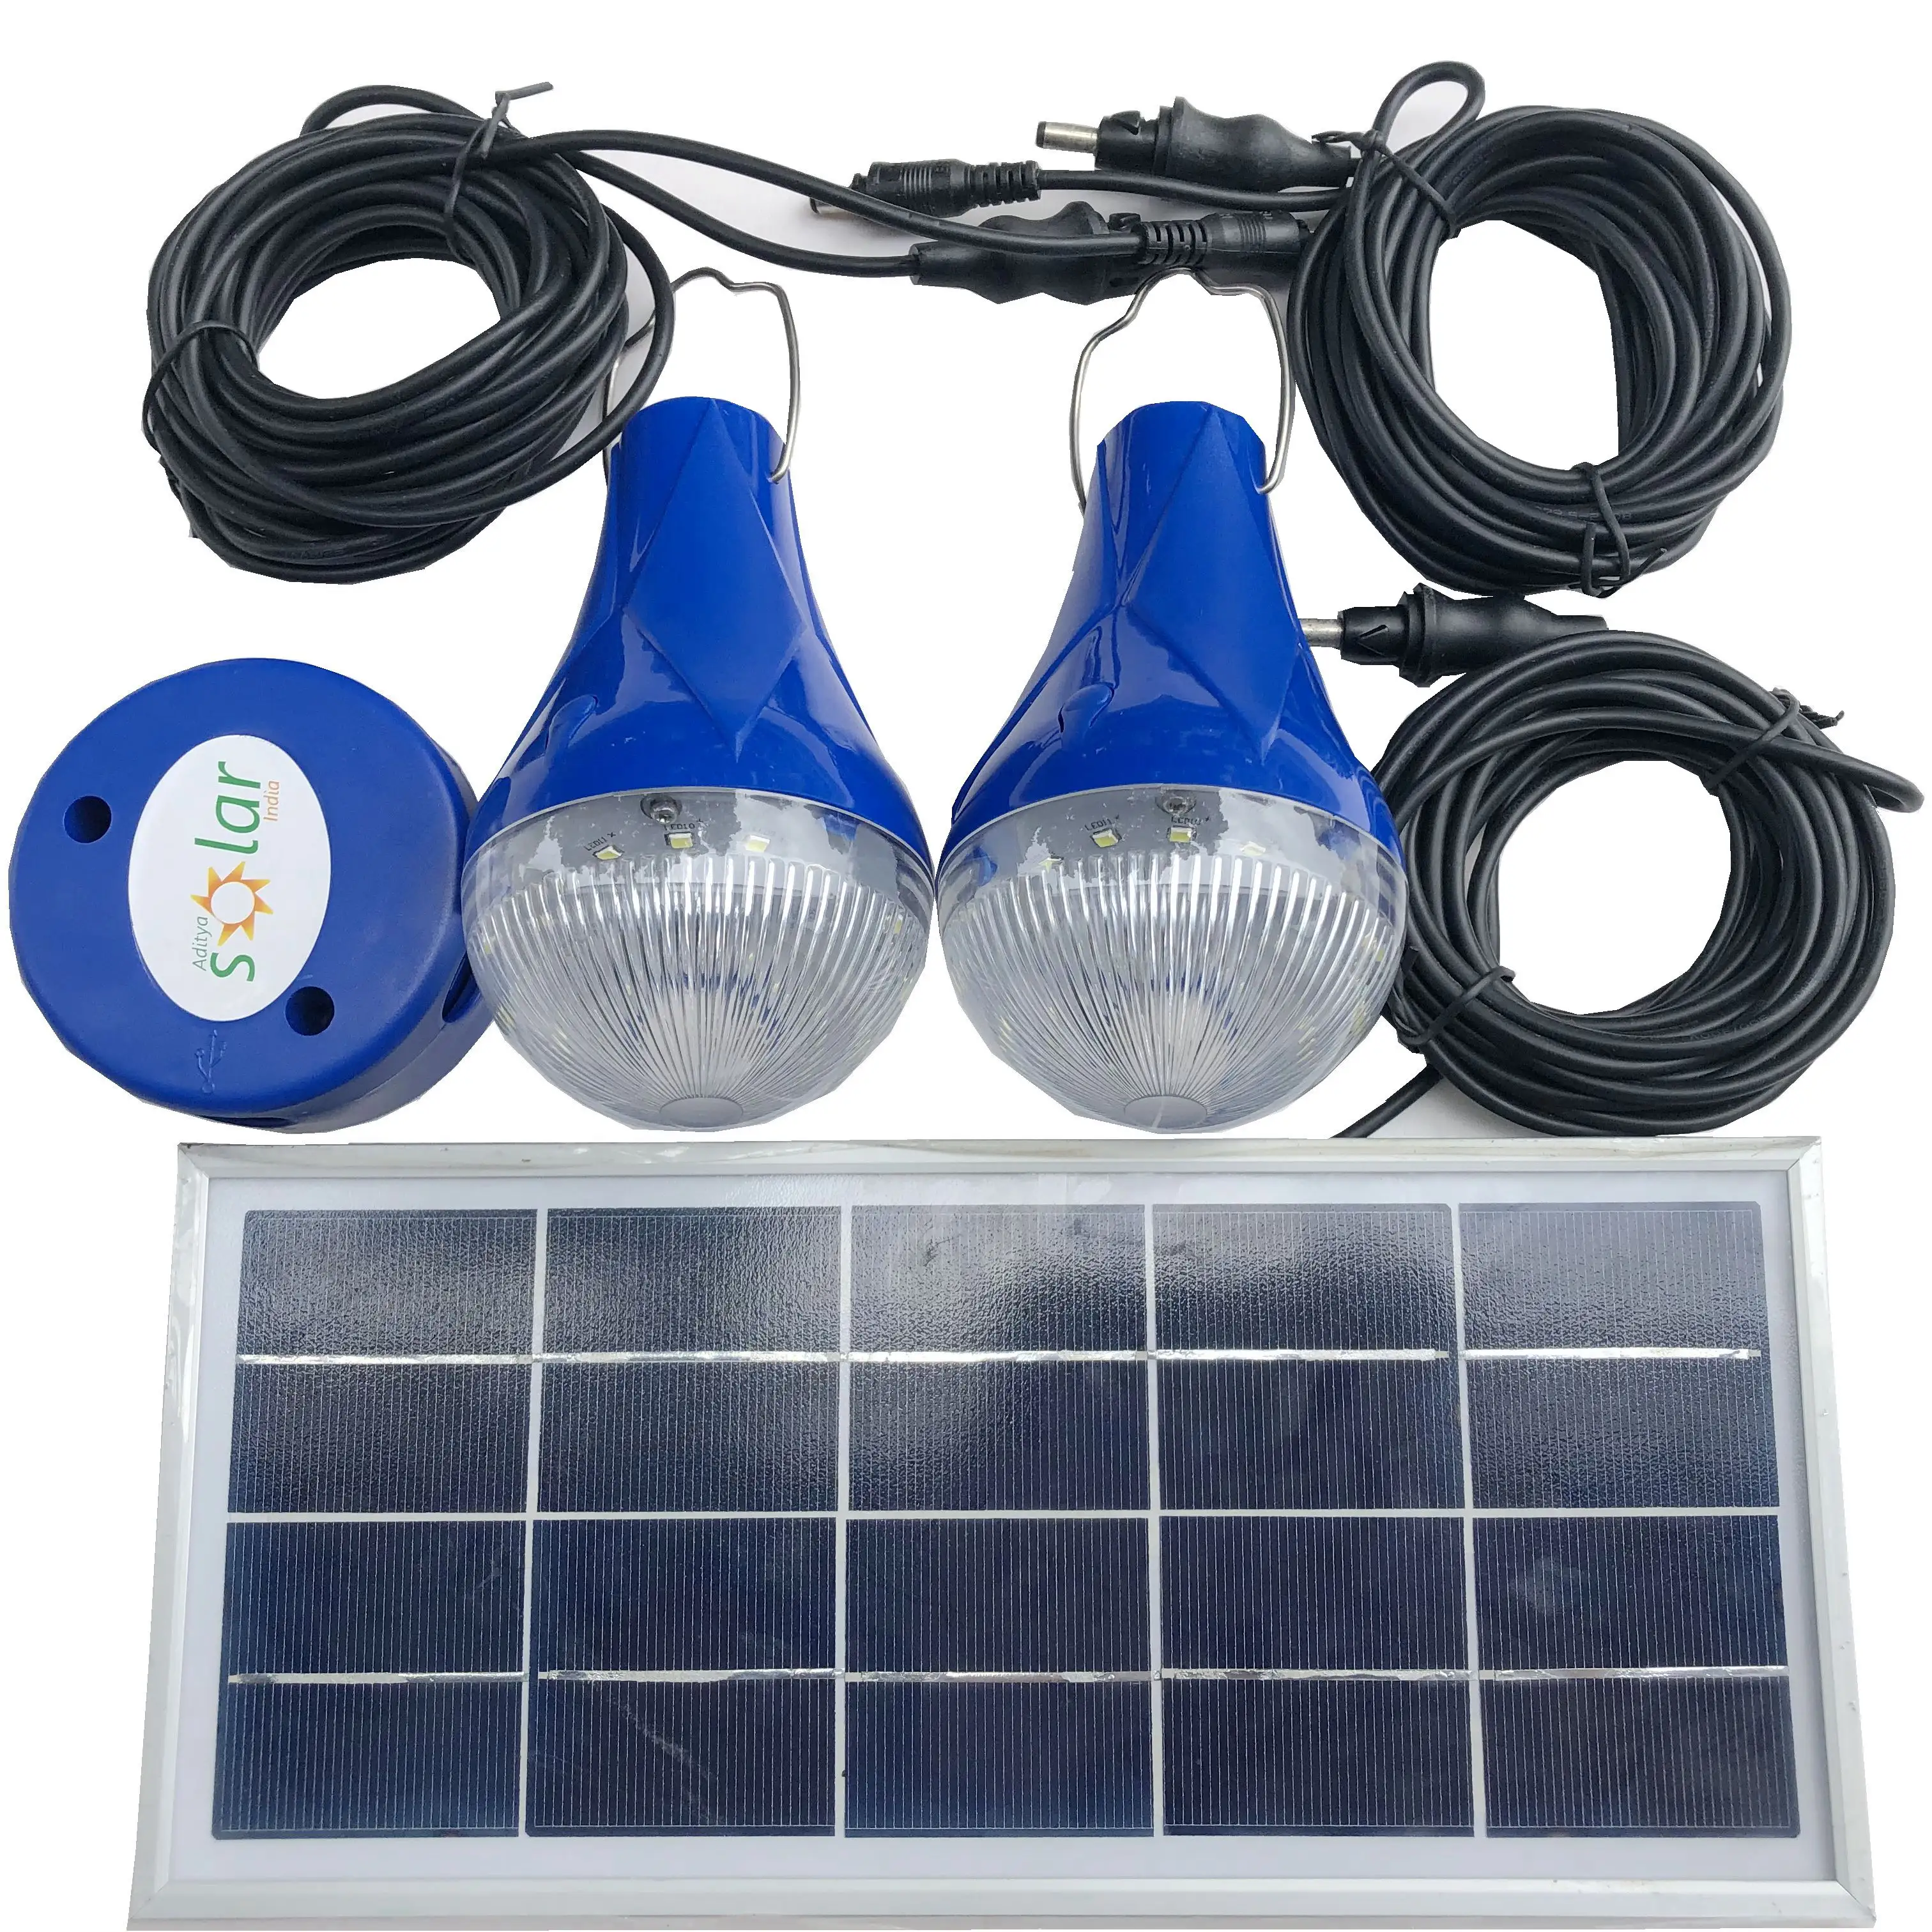 ソーラーパネル緊急LED電球LED原料付きCEポータブルキャンプランタン